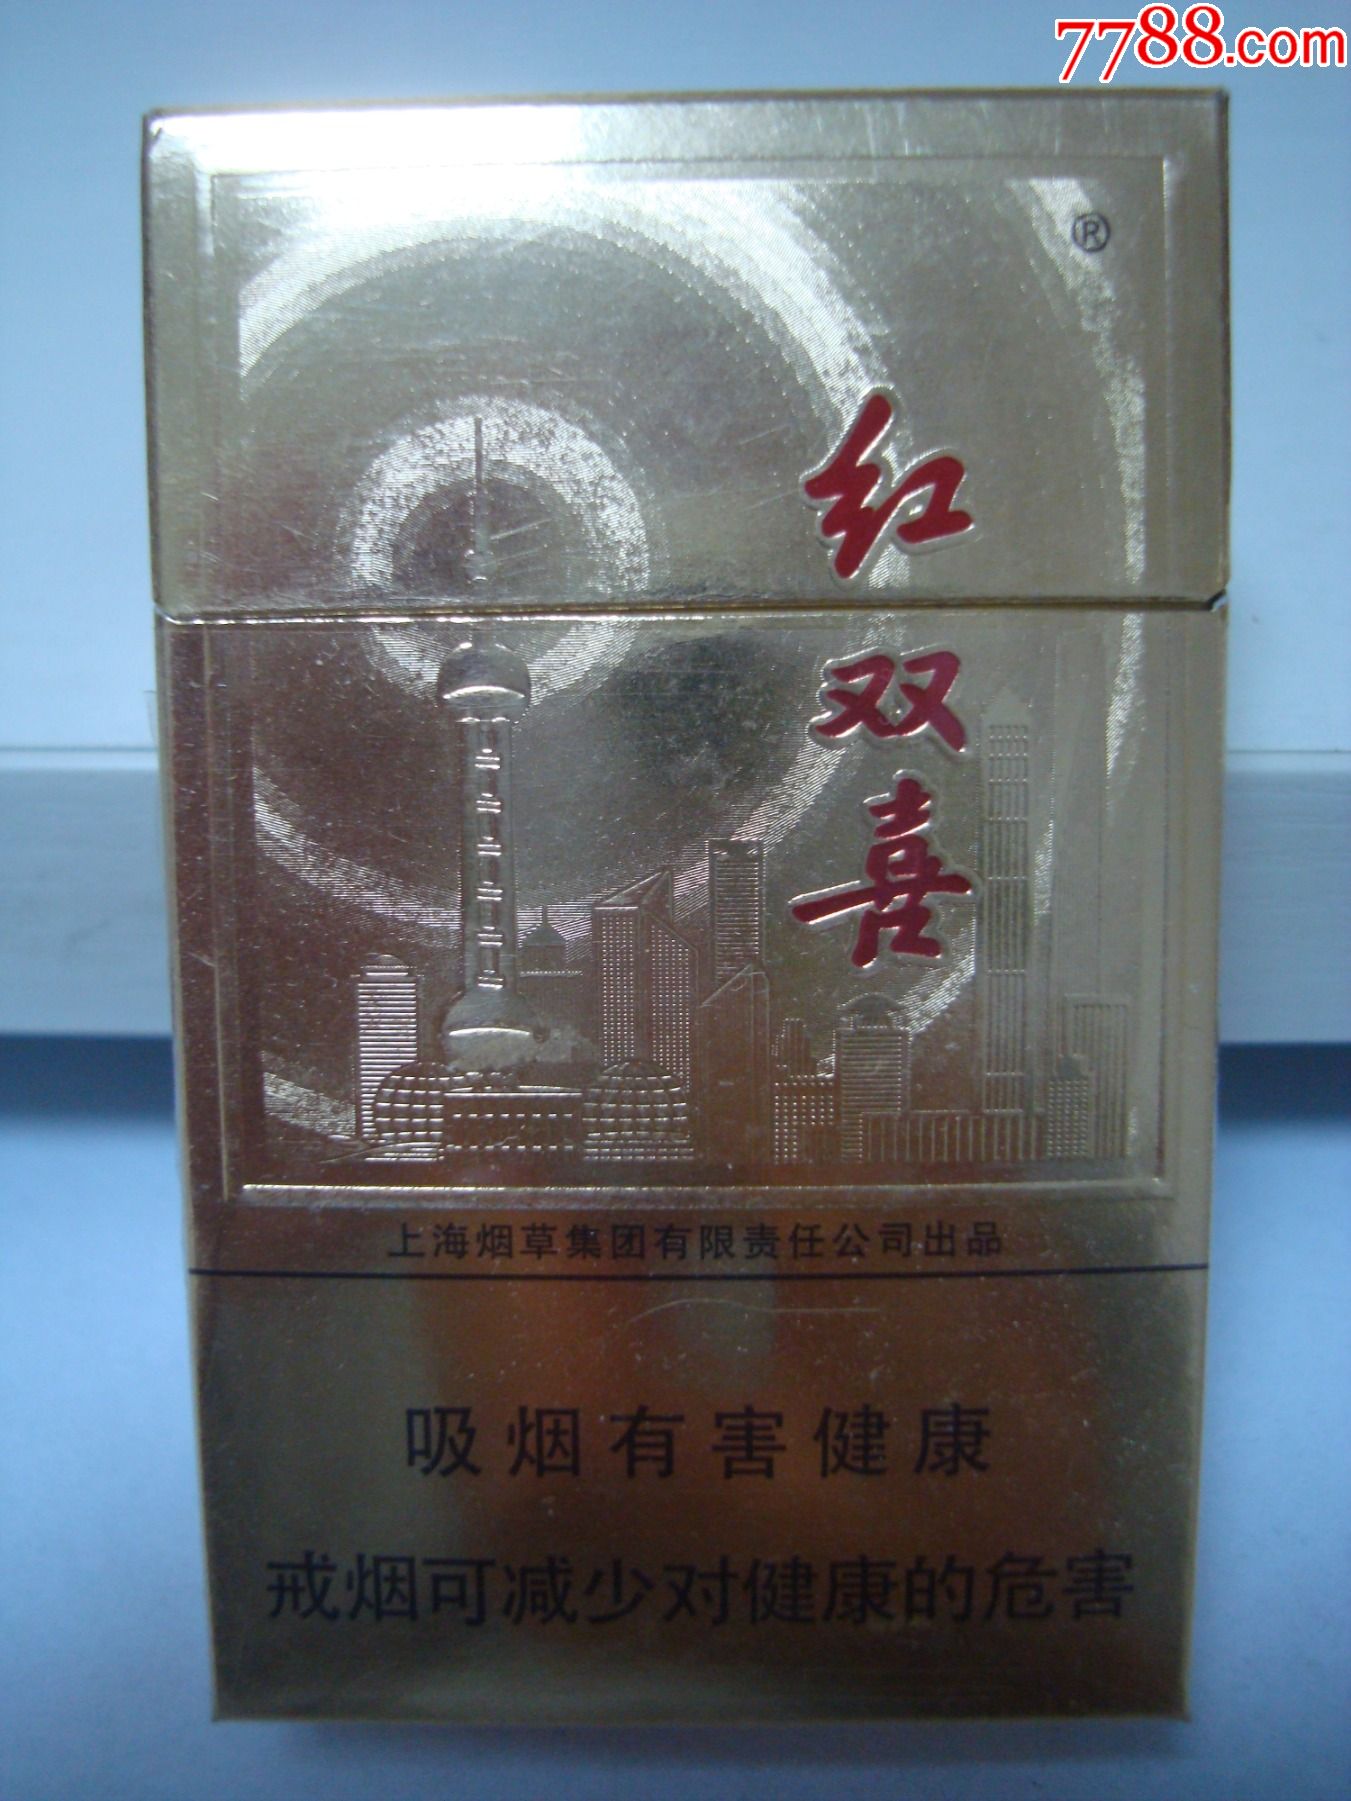 上海香烟红双喜图片